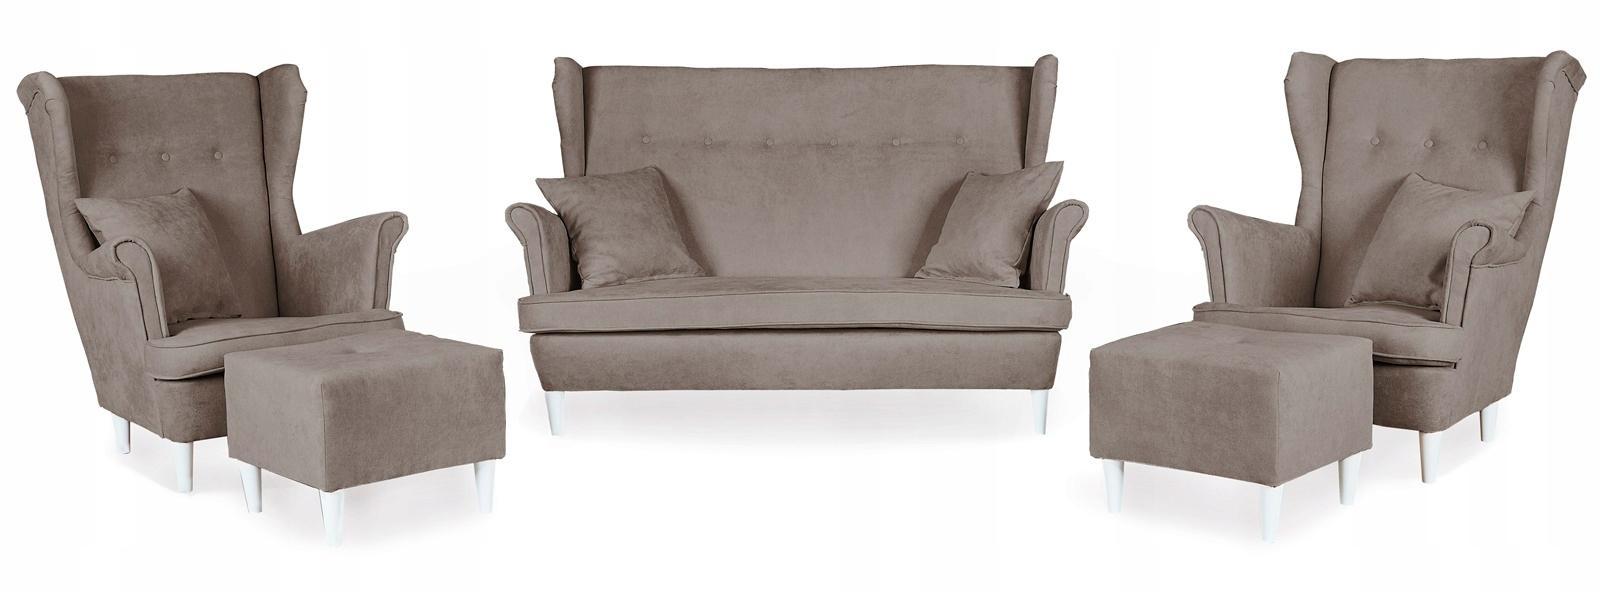 Zestaw wypoczynkowy mebli ARI 149x104x92 cm uszak sofa fotele pufy do salonu Enjoy beżowy nr. 1